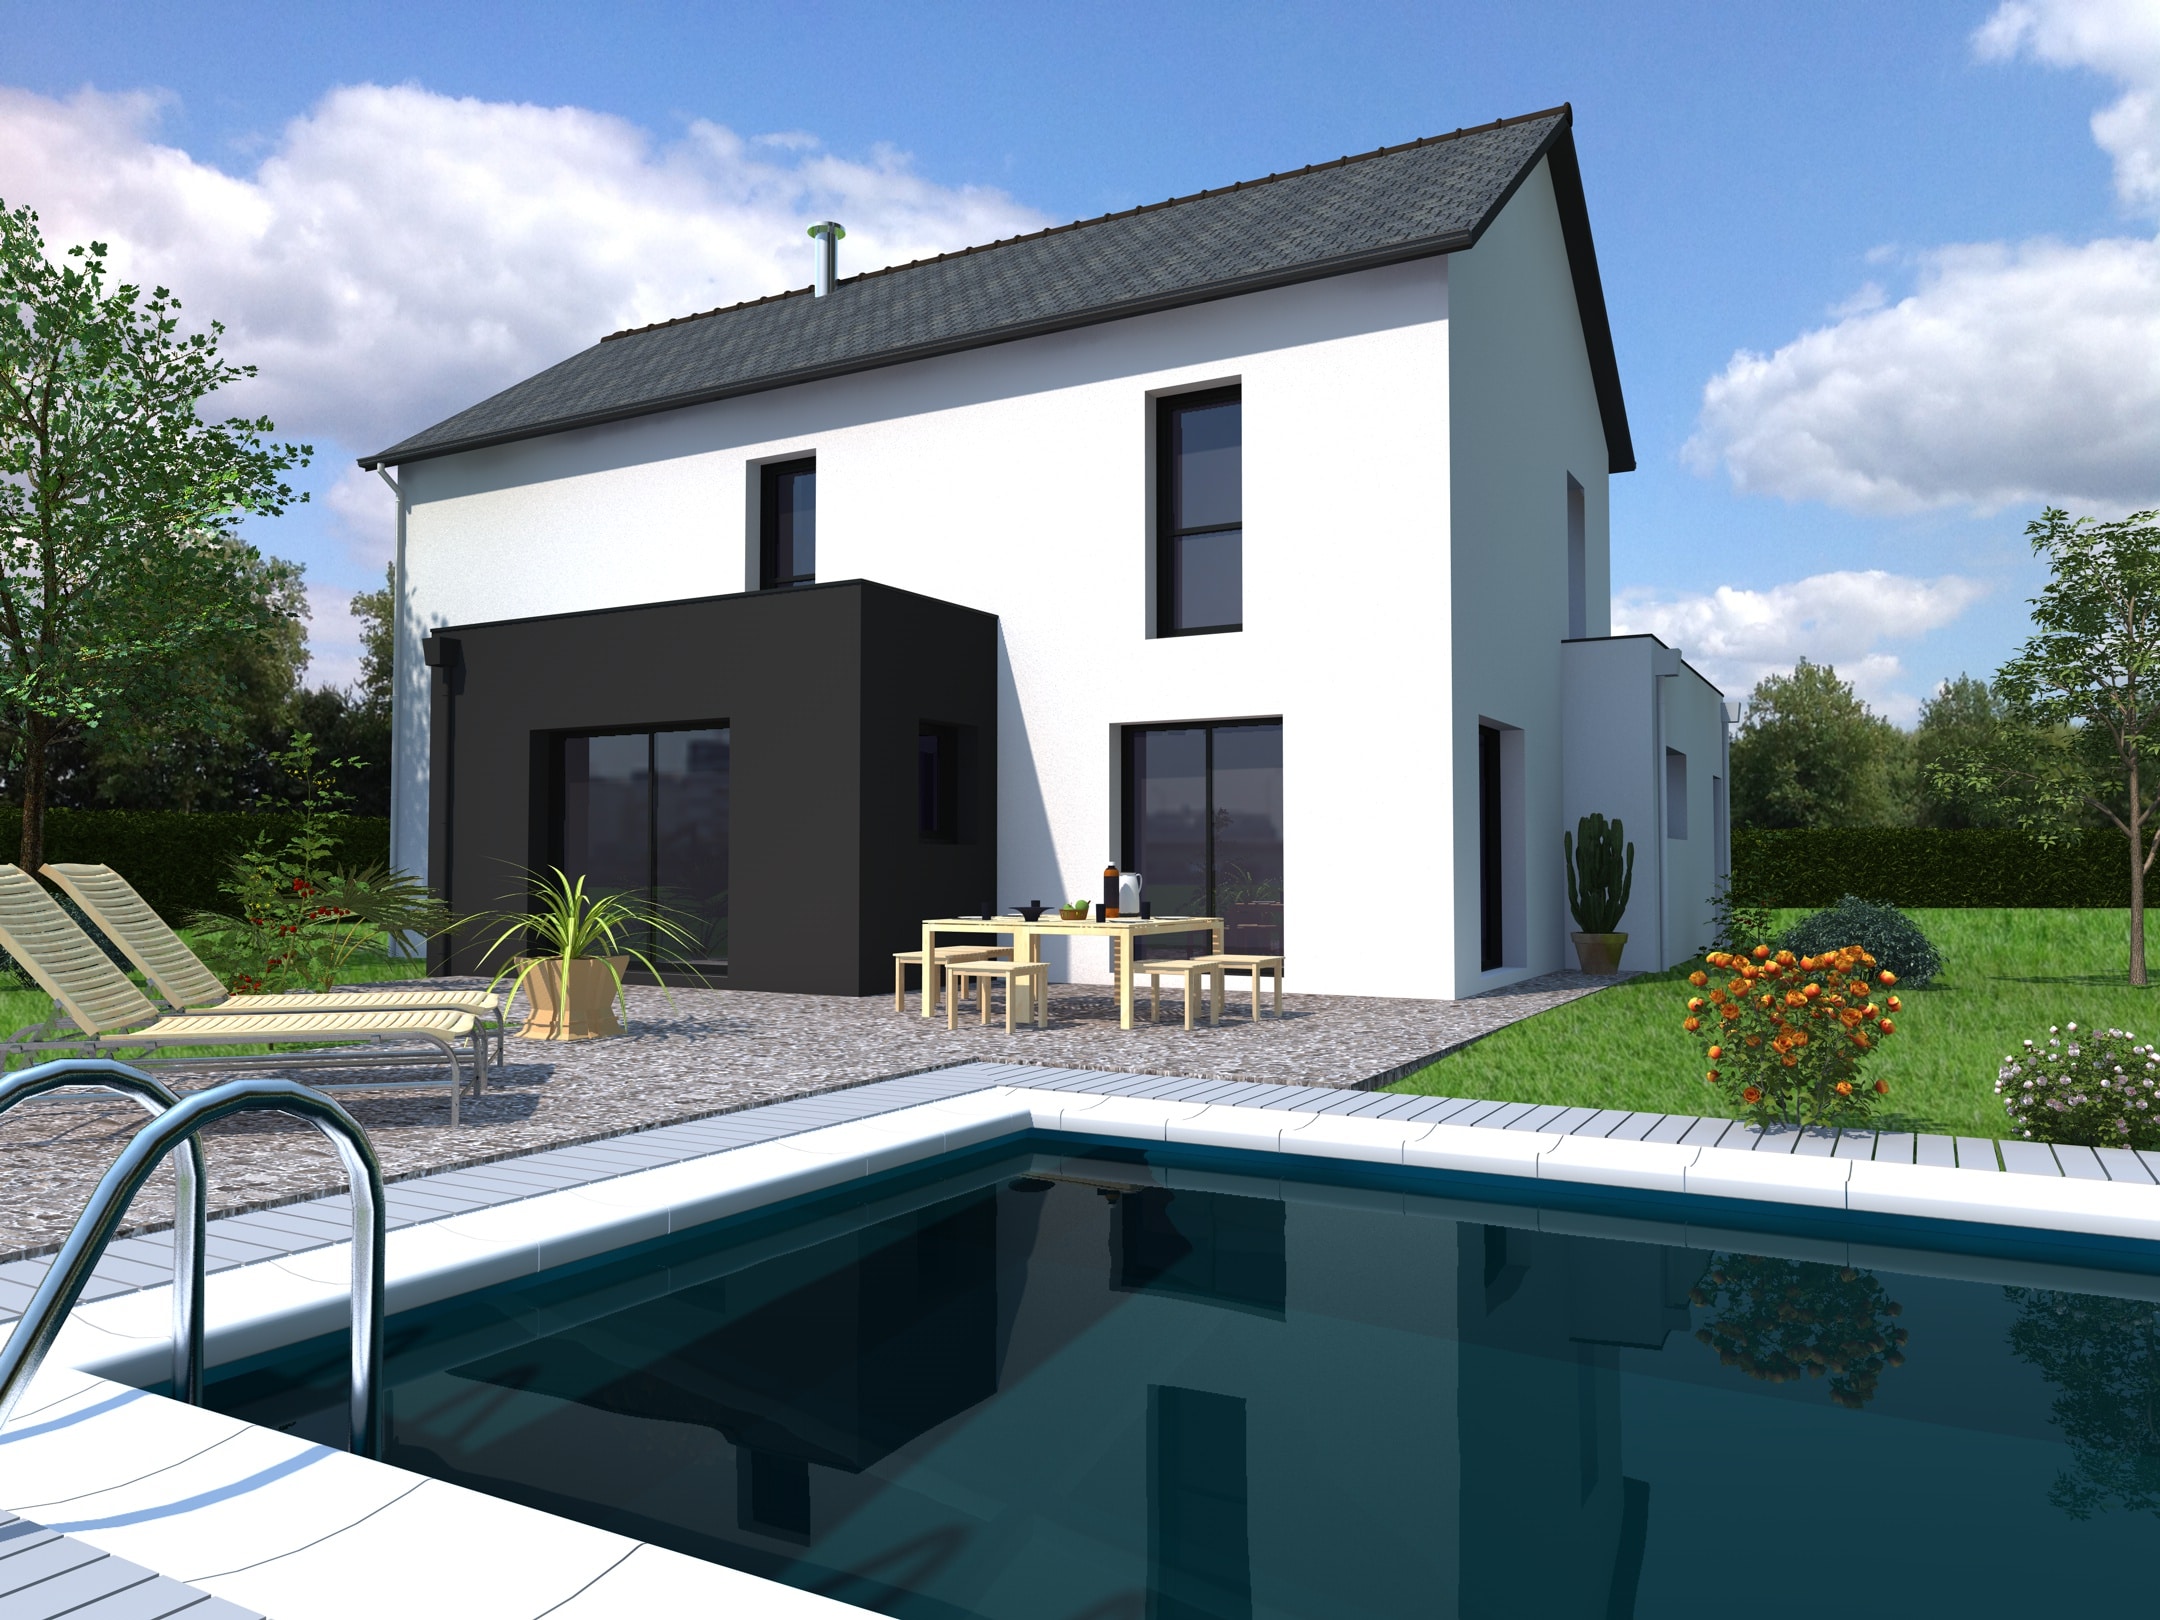 Maison neuve Loire Atlantique 179 000€ contemporaine - MF-Construction